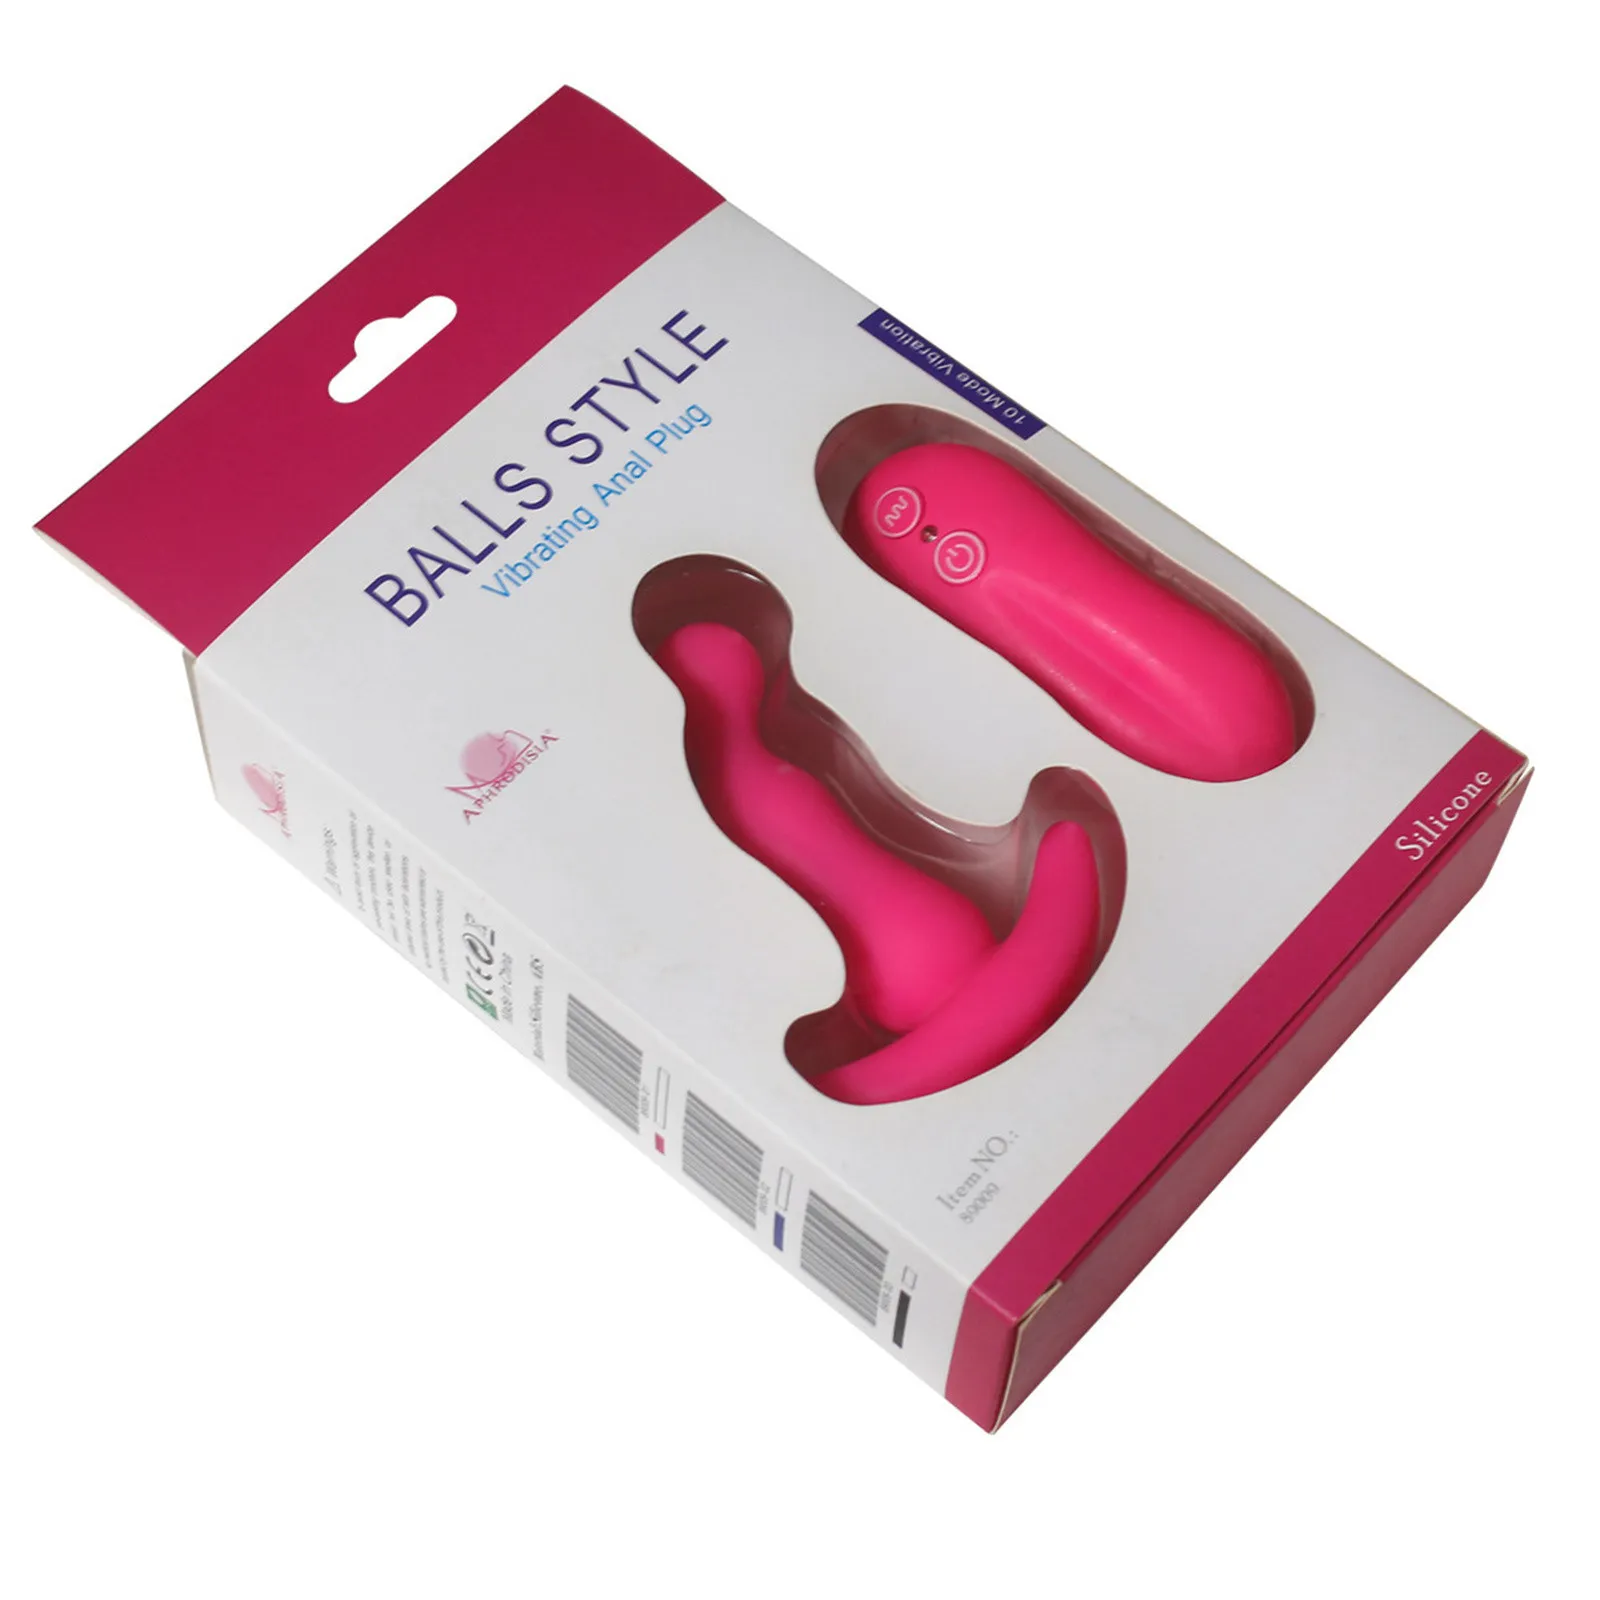 男性用のセクシーなおもちゃ前立腺マッサージ剤バイブレーターバットプラグアナルテール回転ワイヤレスリモートUSB充電アダルト製品女性